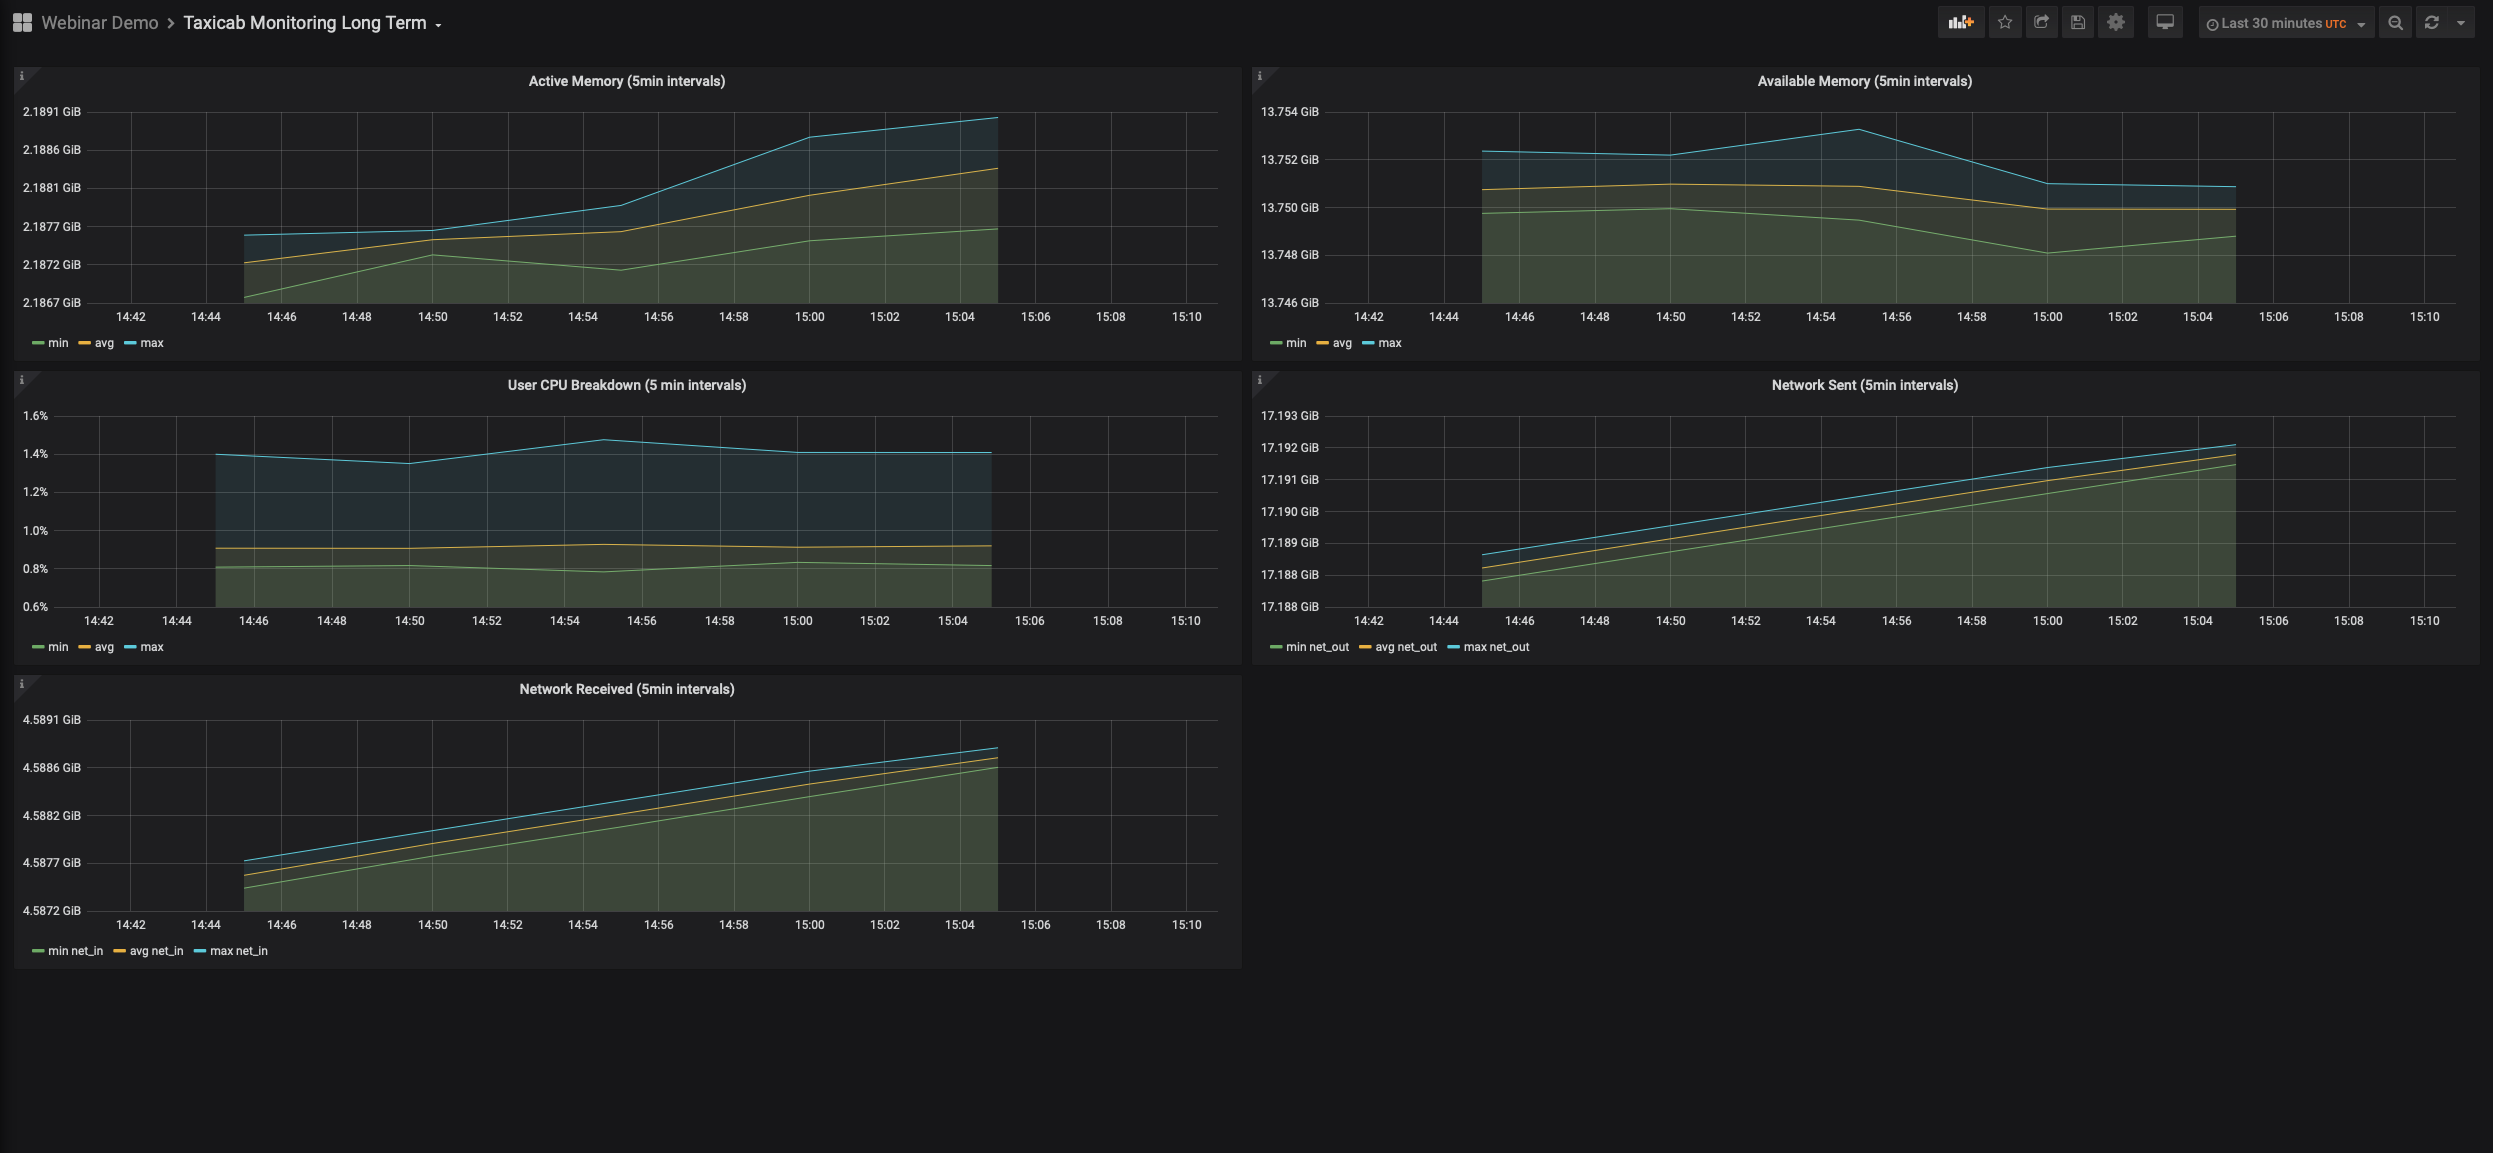 Two screenshots of Grafana dashboards displaying monitoring metrics graphs and charts